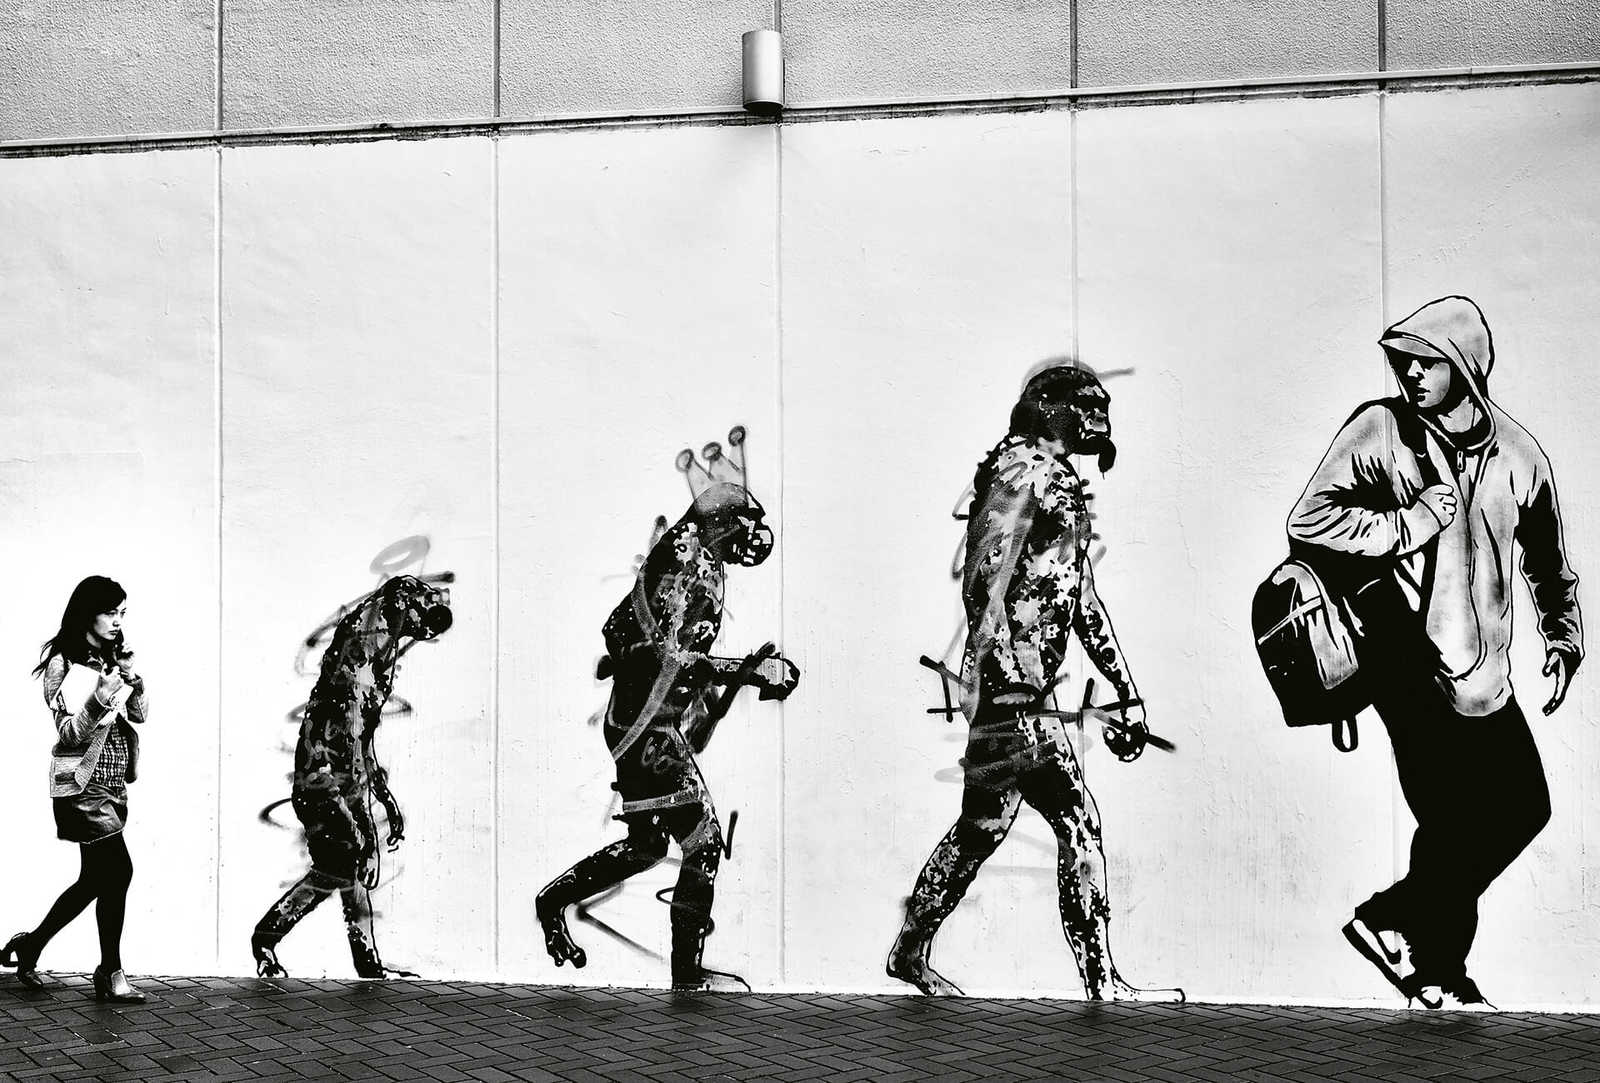         Photo wallpaper modern Street Art Evolution - Black, White
    